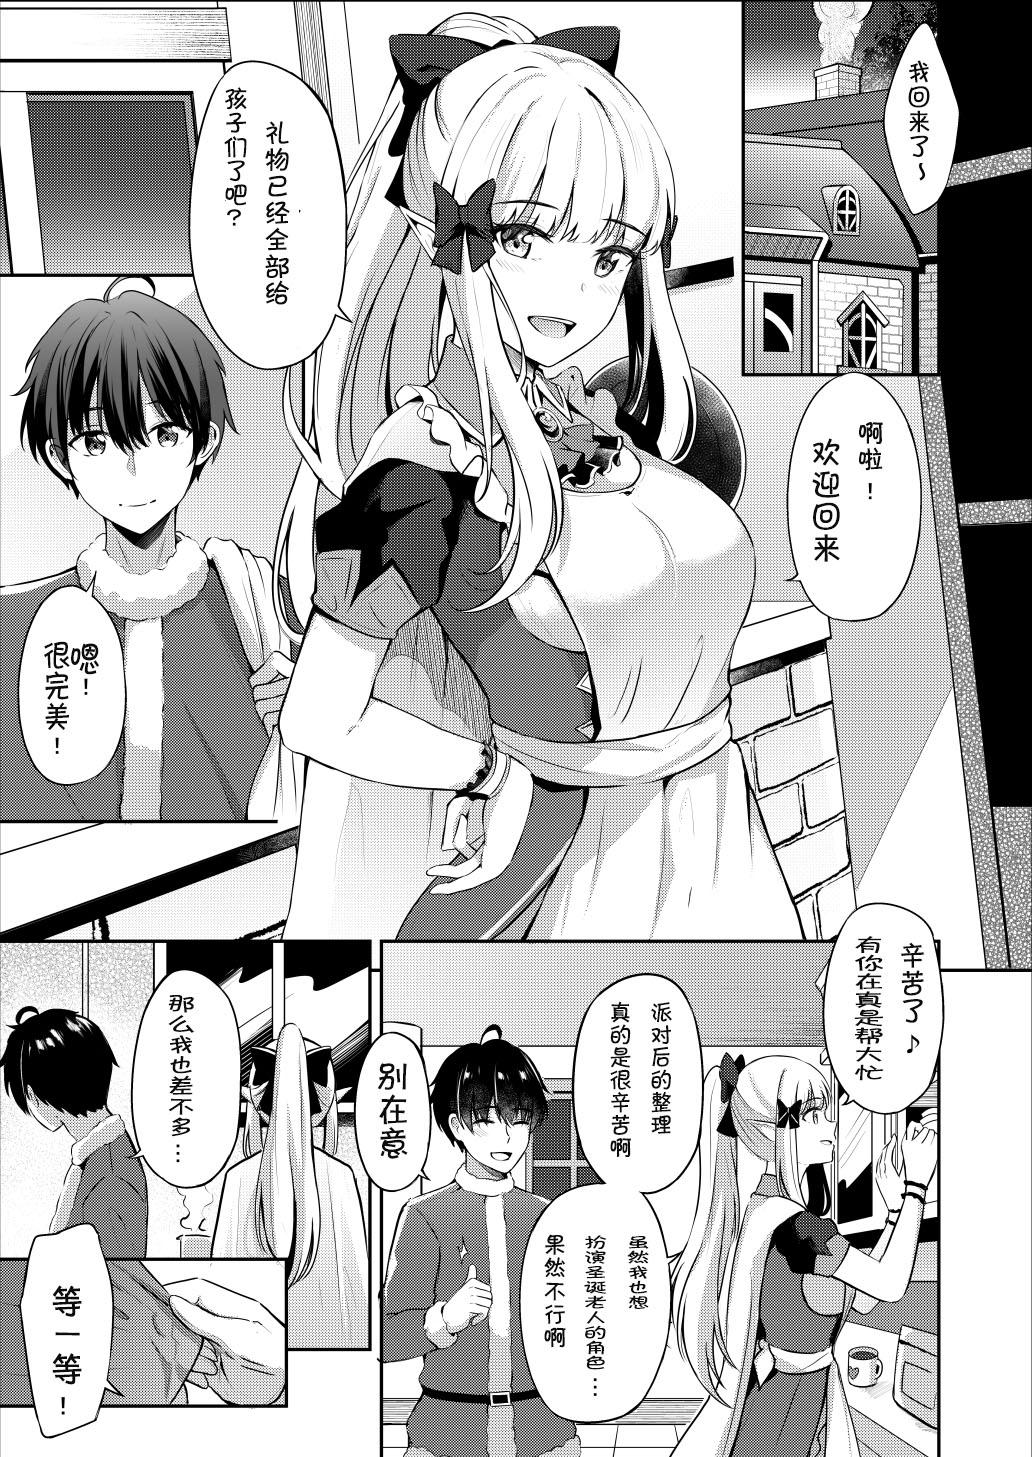 Handjobs Saren no Tanoshii Yume - Princess connect Italiano - Page 4